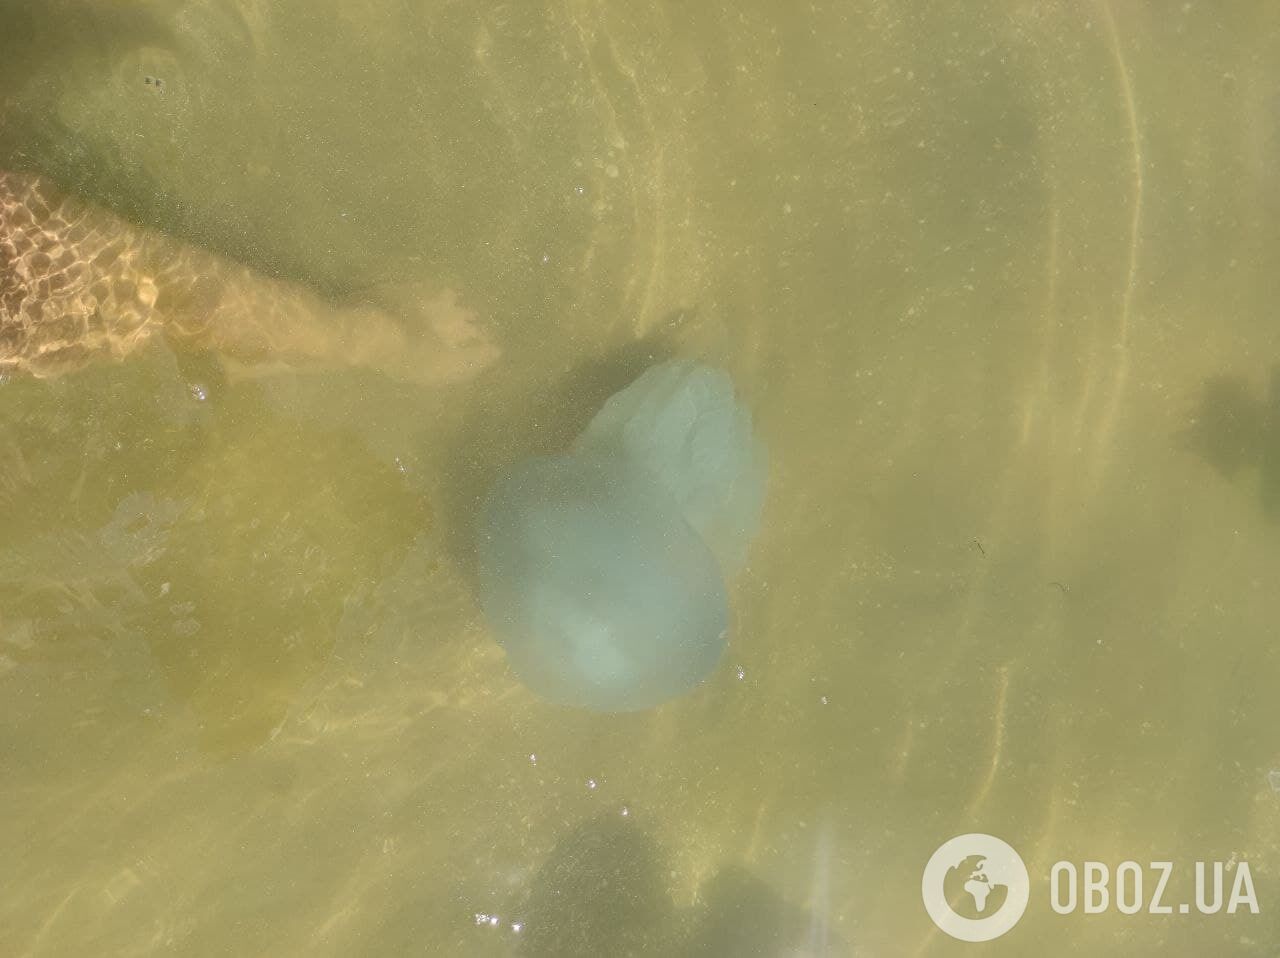 Медузы размером как "пять ладоней"